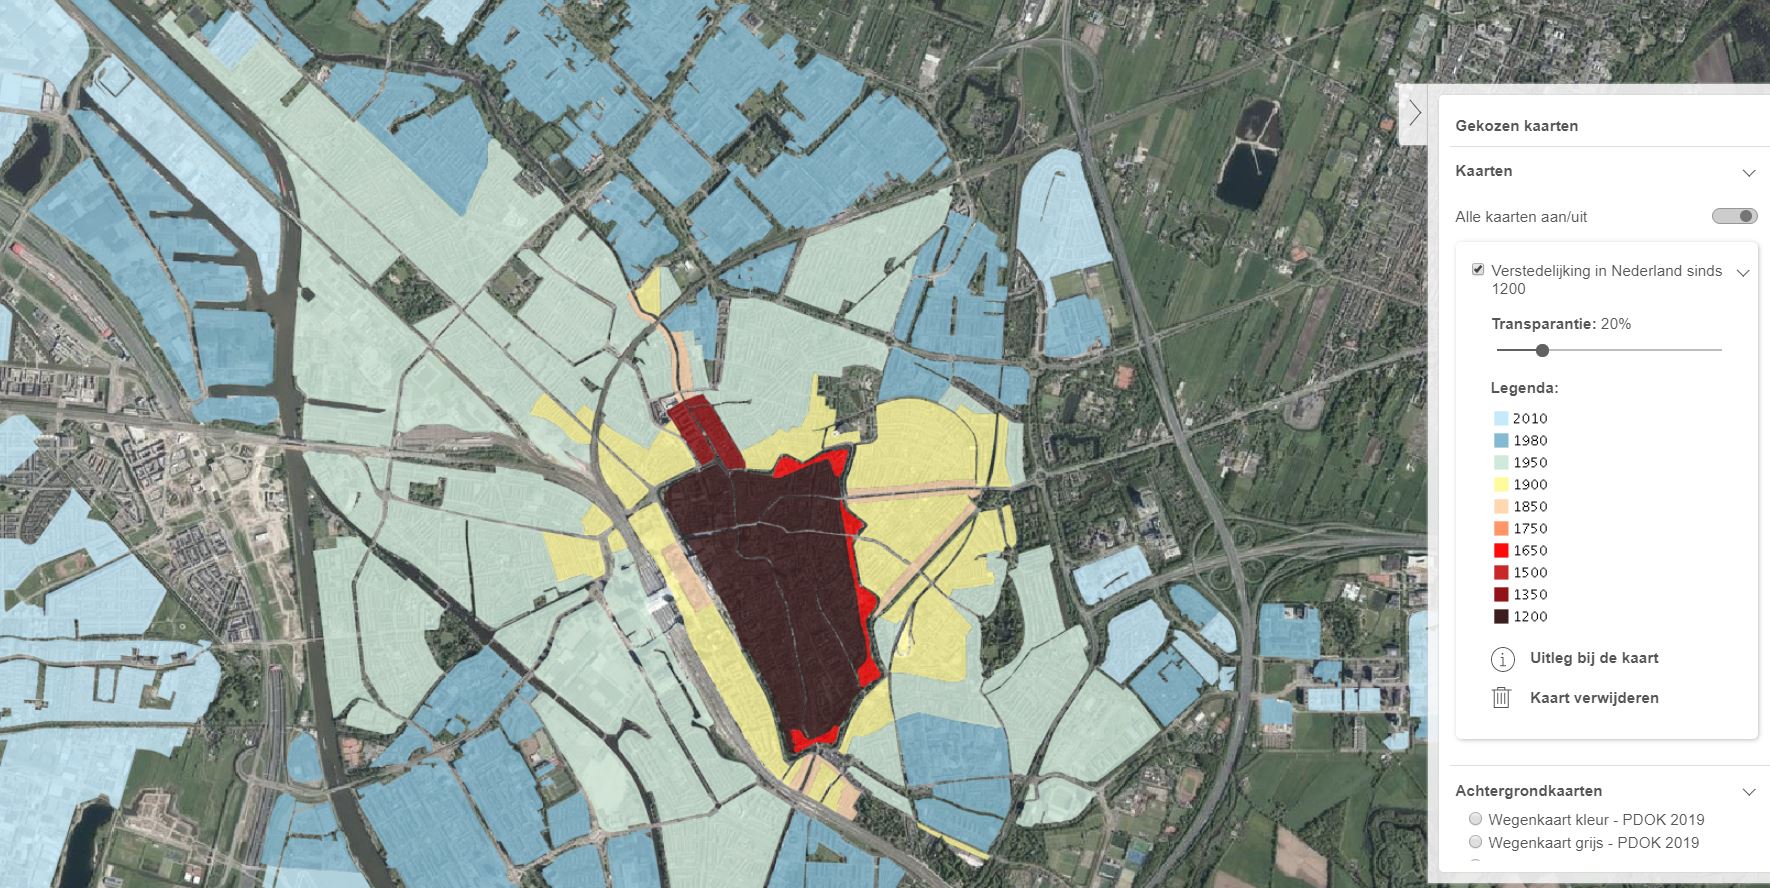 Utrecht op kaart Verstedelijking vanaf 1200